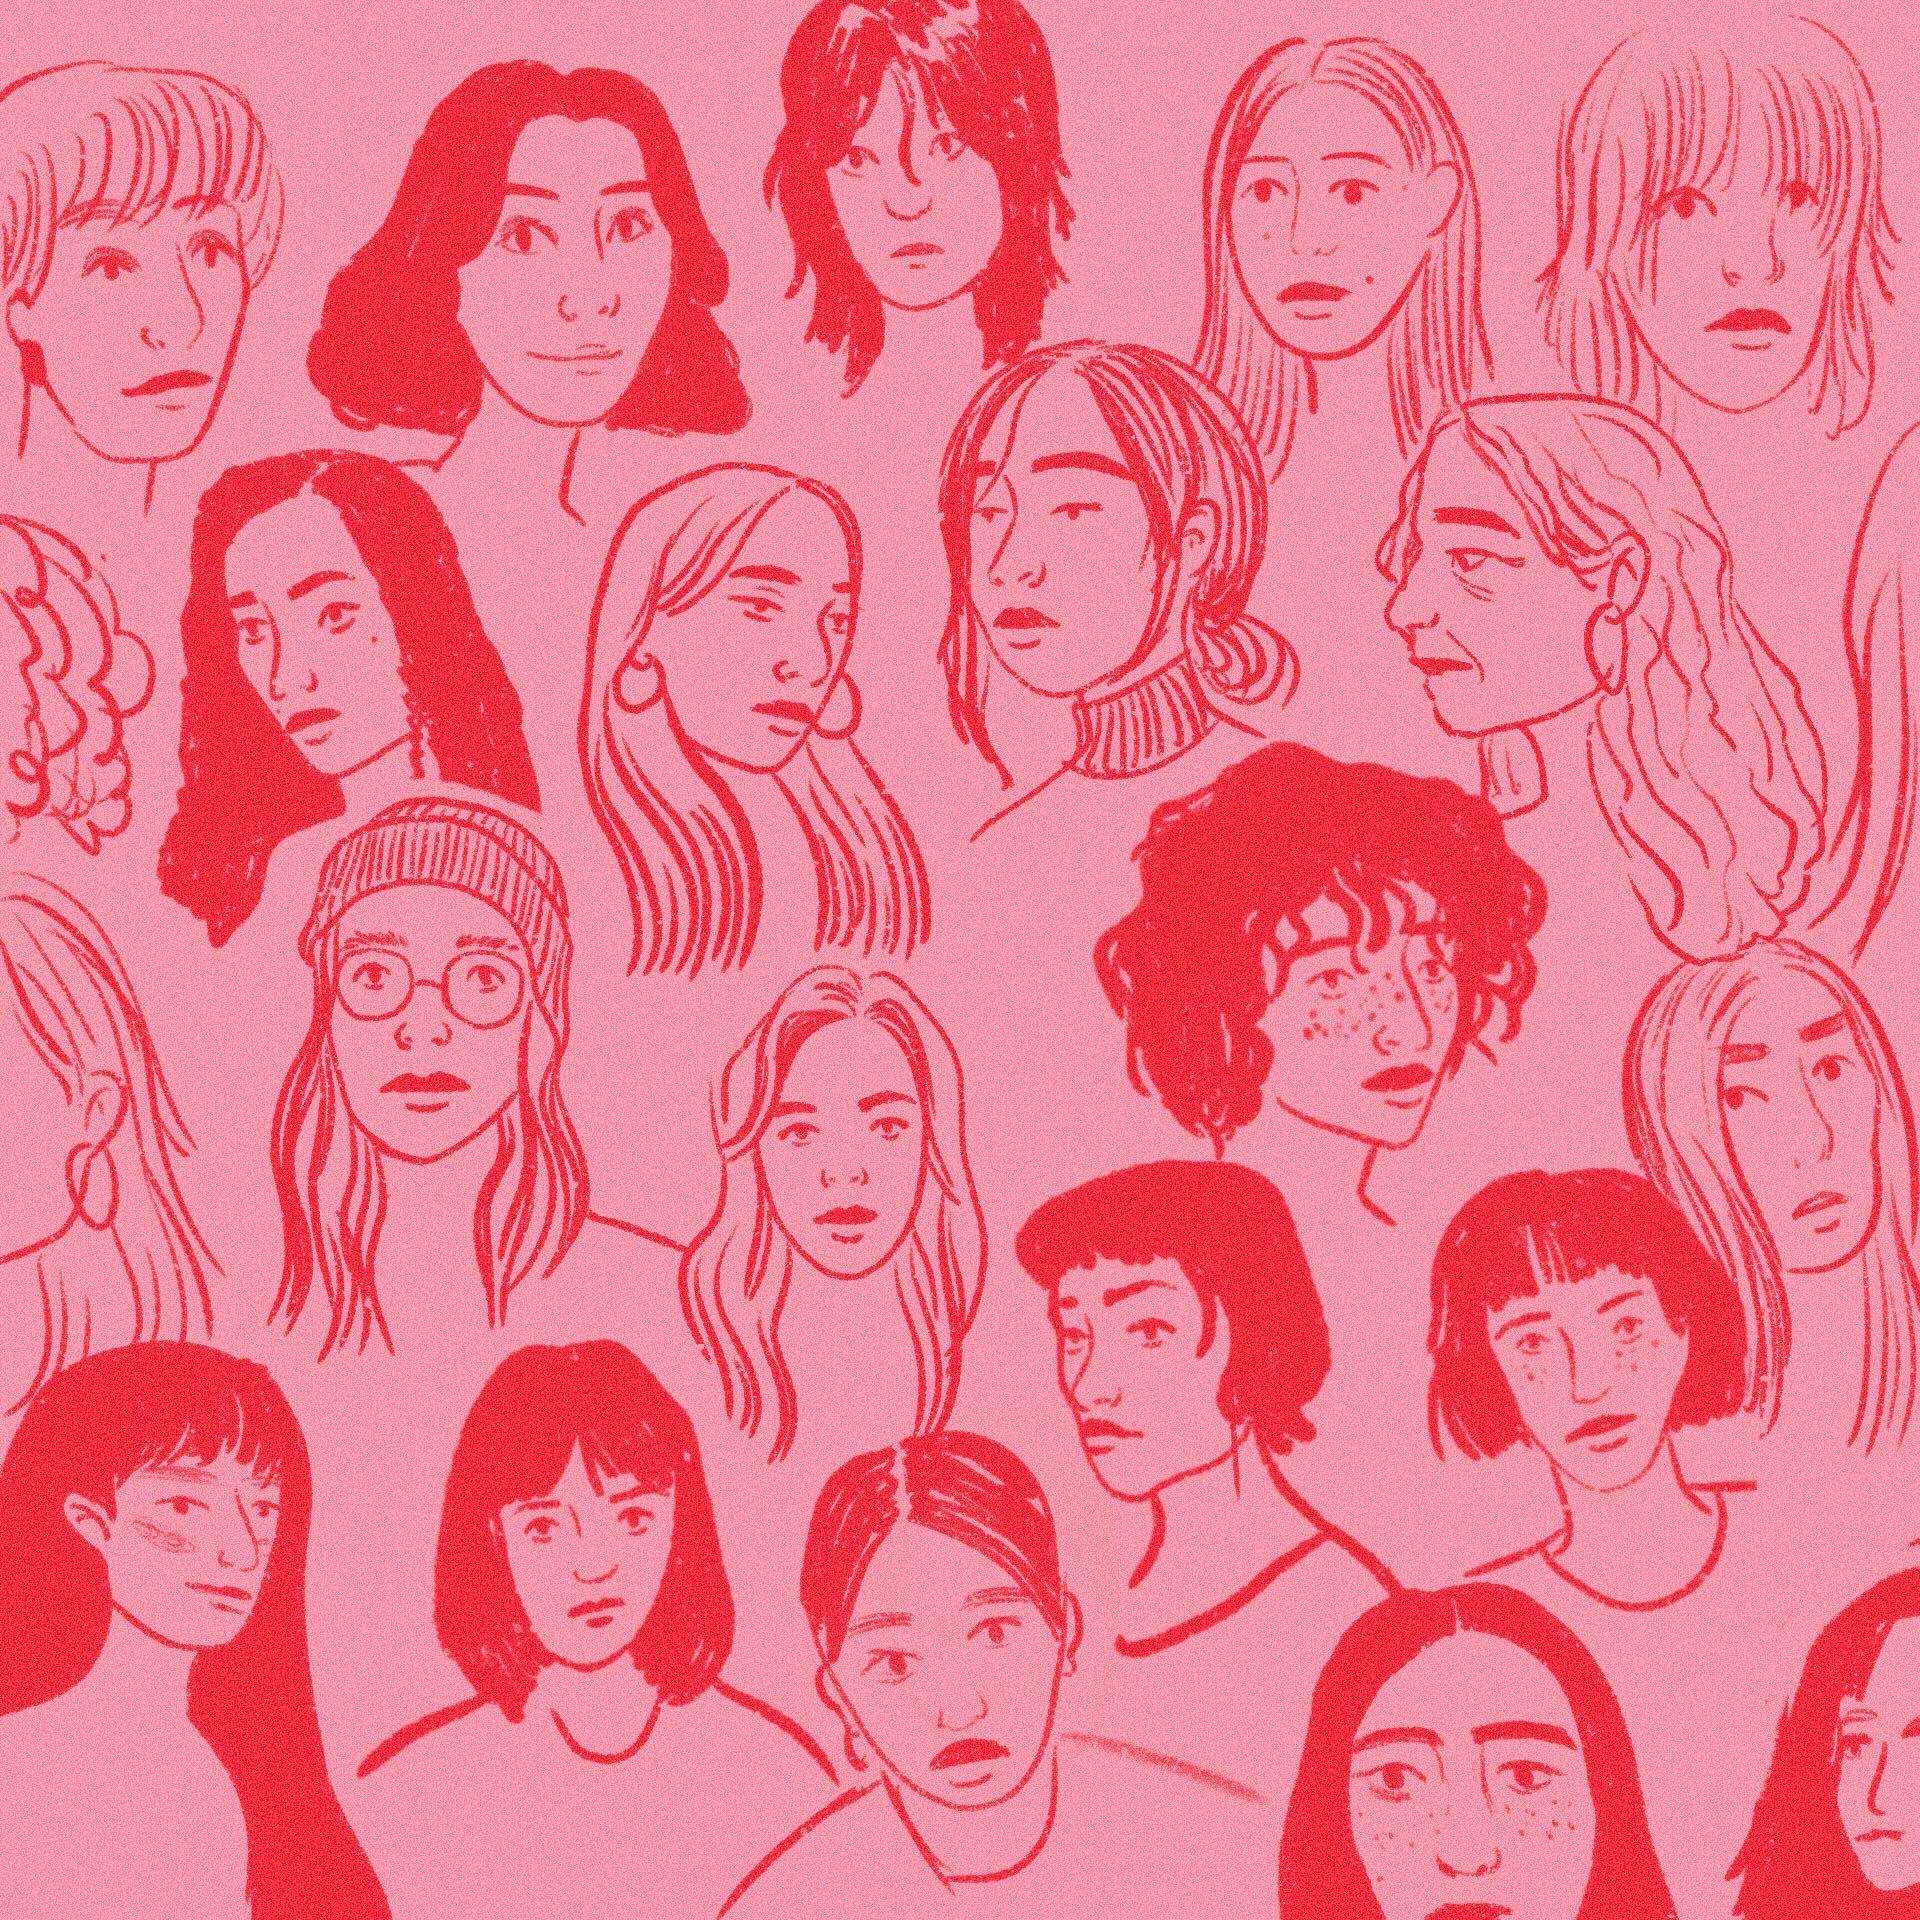 Ilustracja przedstawiająca twarze różnych kobiet na czerwonym tle